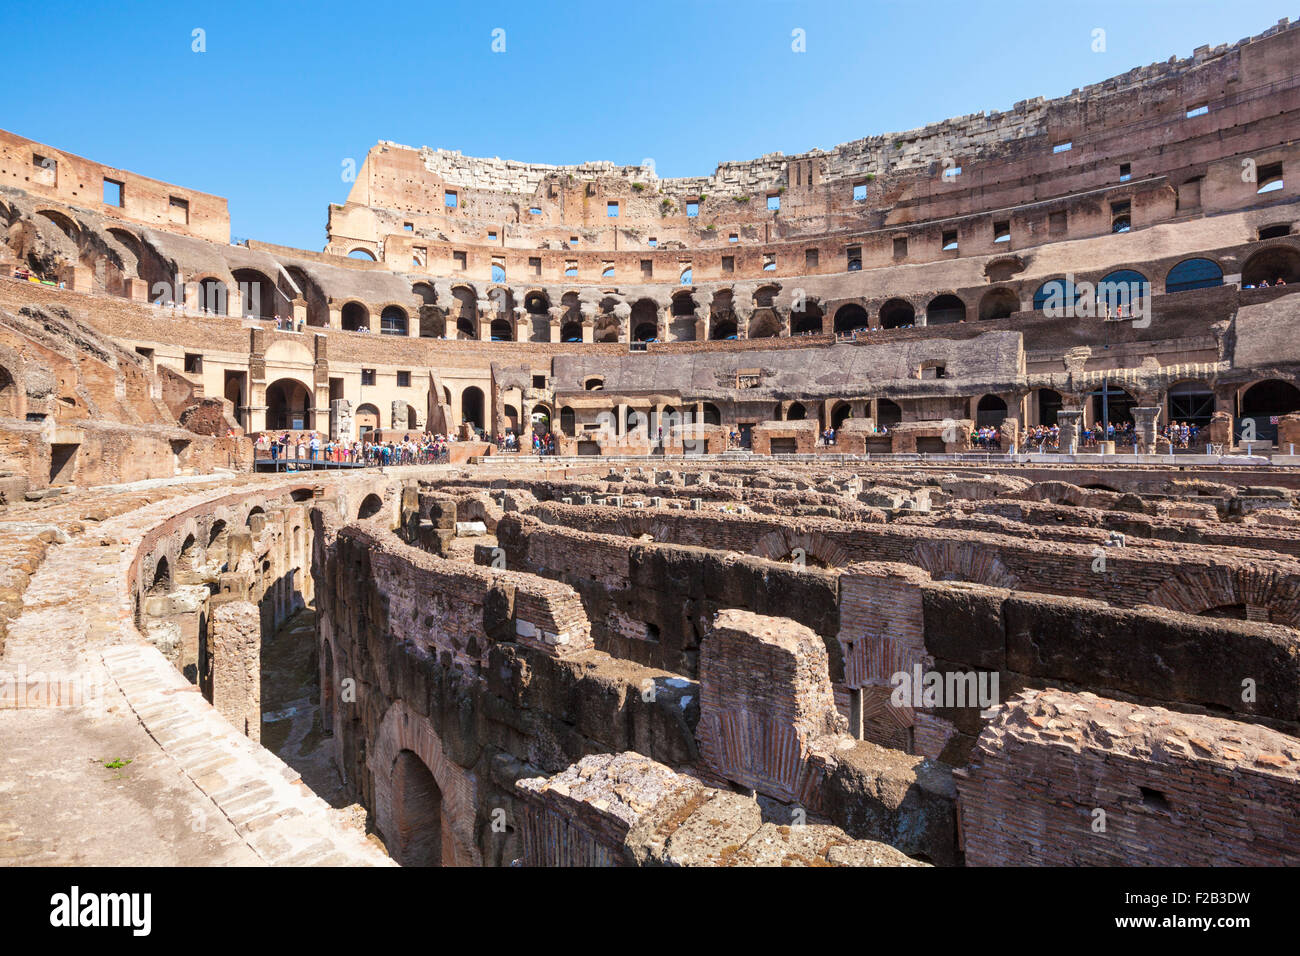 Im Inneren das Kolosseum in Rom oder Flavian Amphitheater Blick über die Ausgrabungen der Arena Rom Latium Region Italien EU Europa Stockfoto